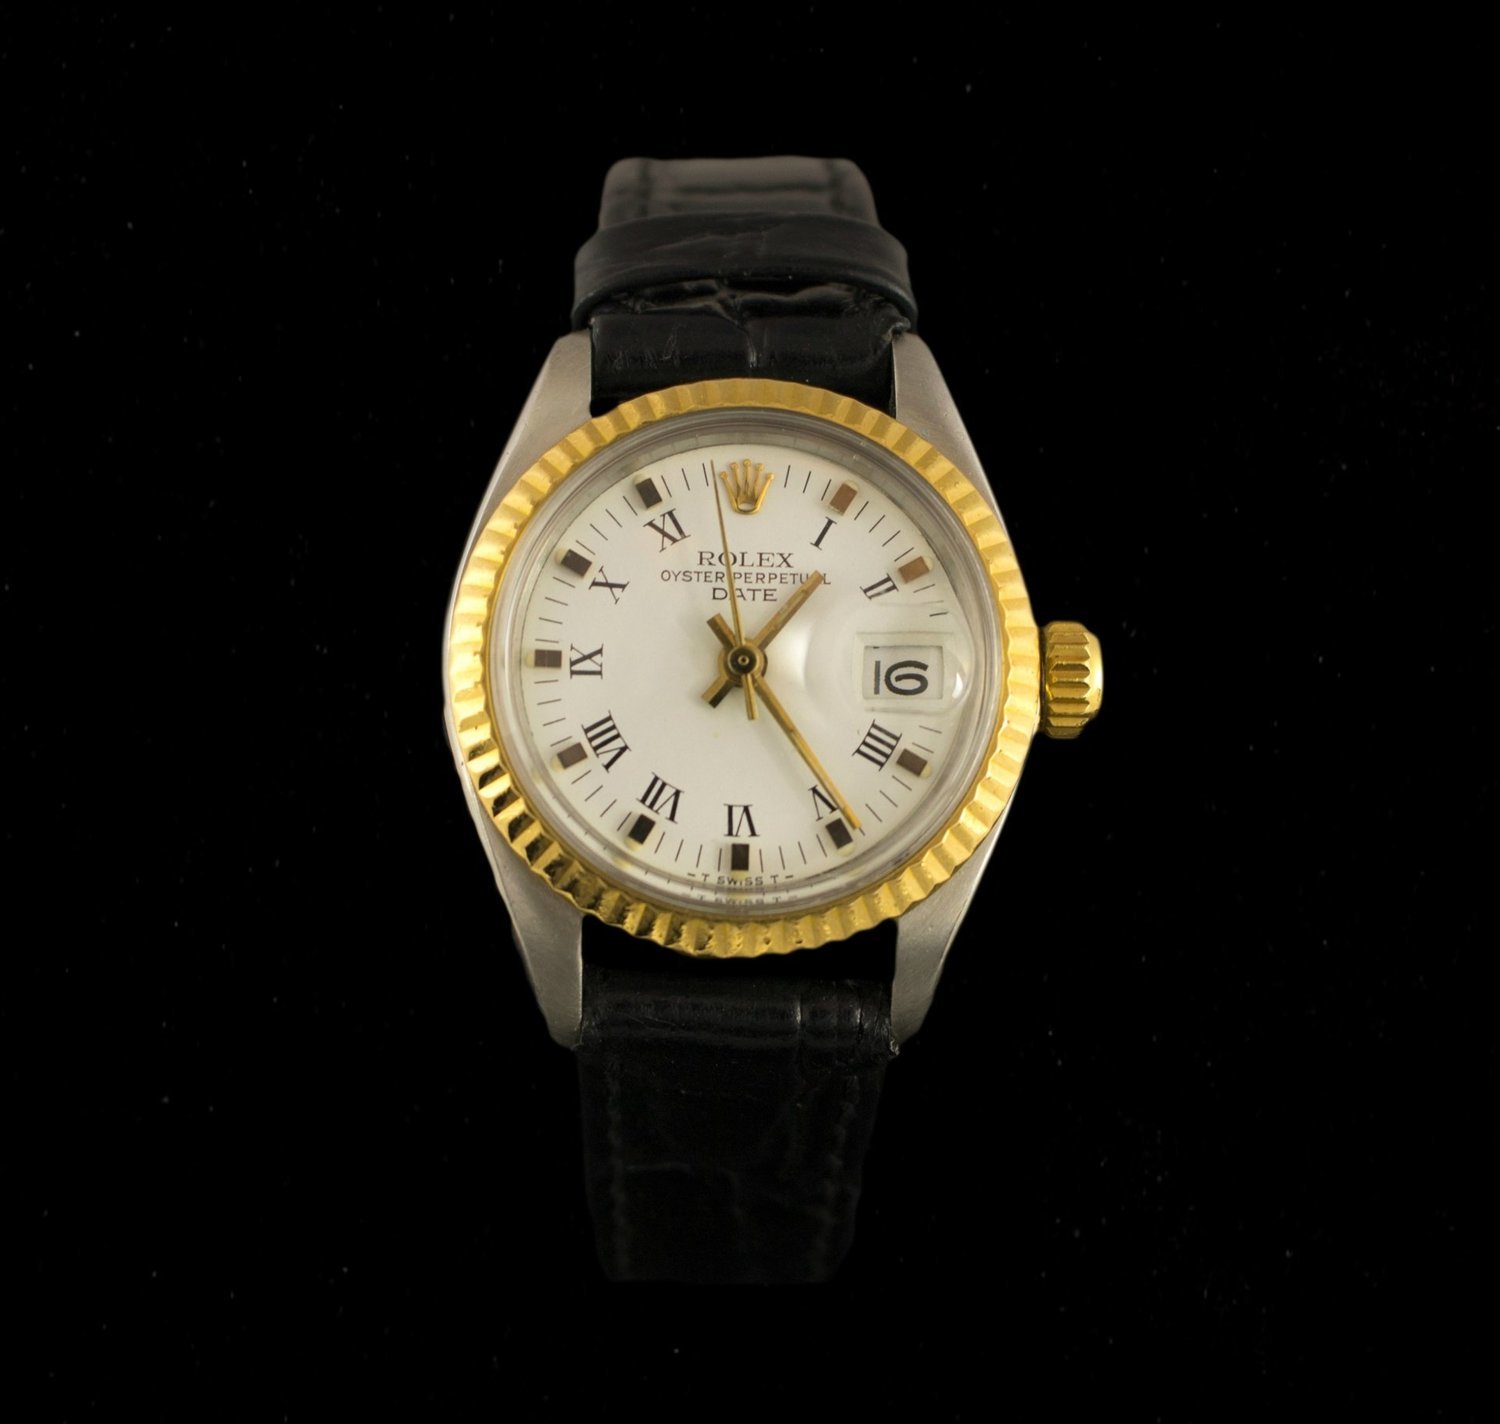 Reloj Rolex de Sra. Oyster Perpetual Date en acero y oro con correa de piel.